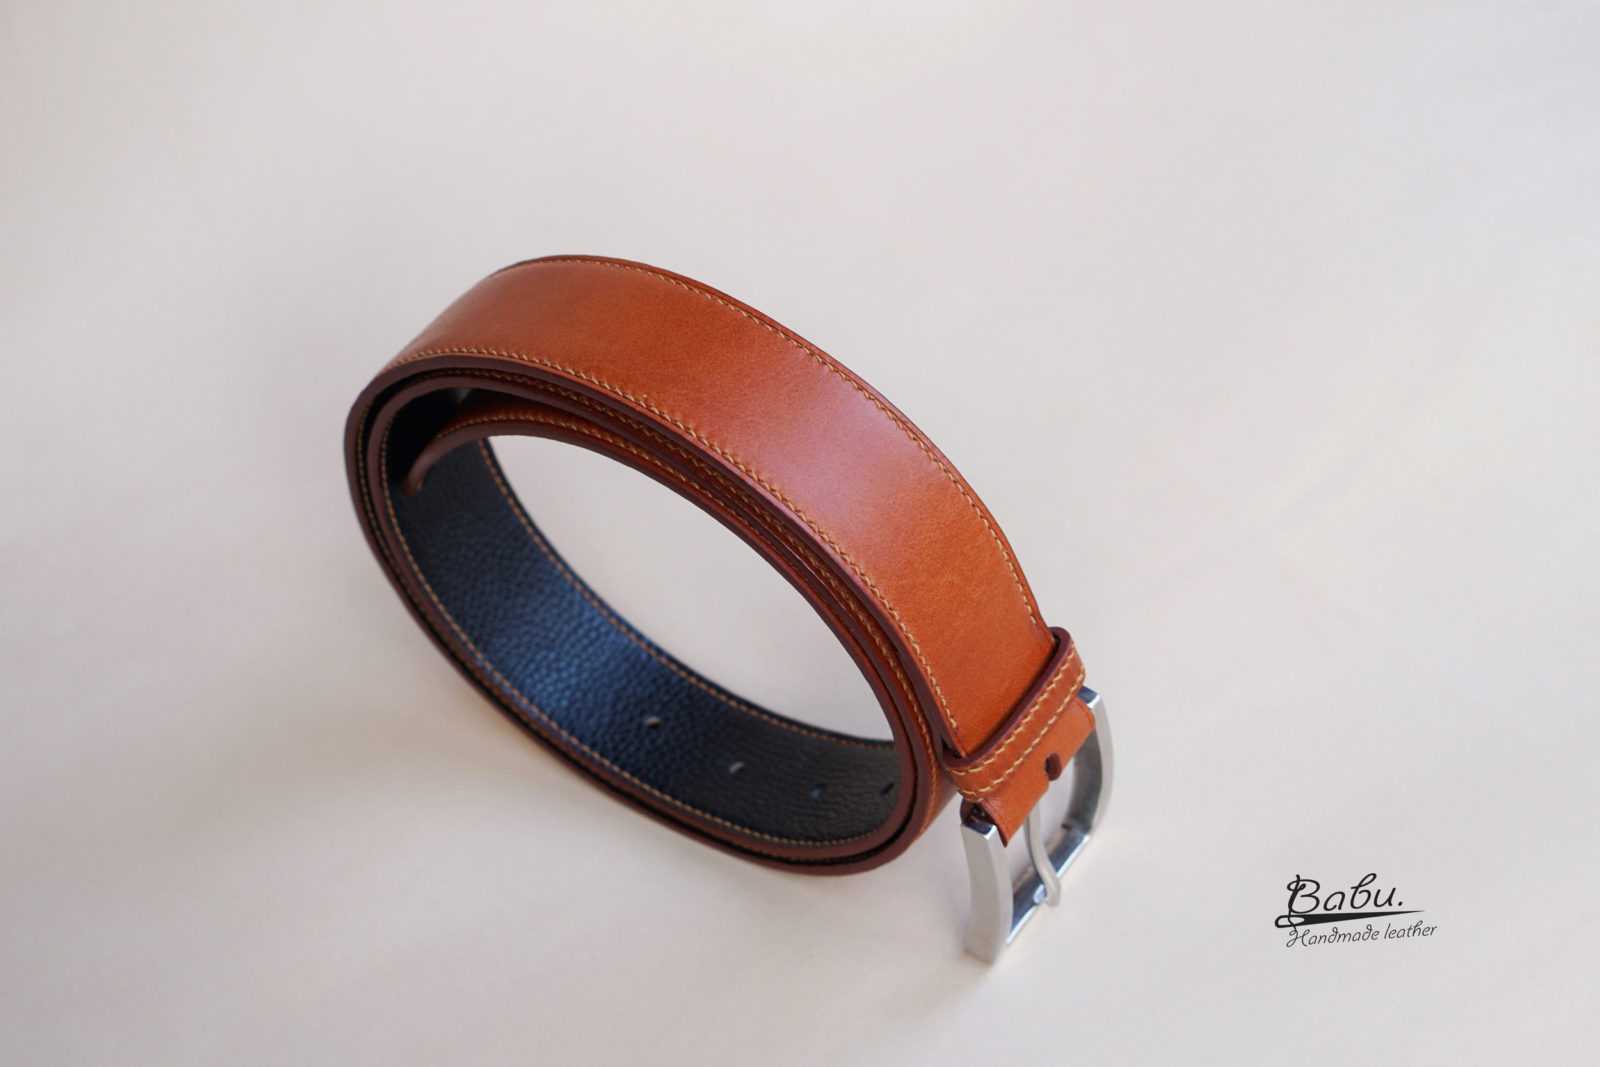 Italian Vachetta Leather Belt - Brown